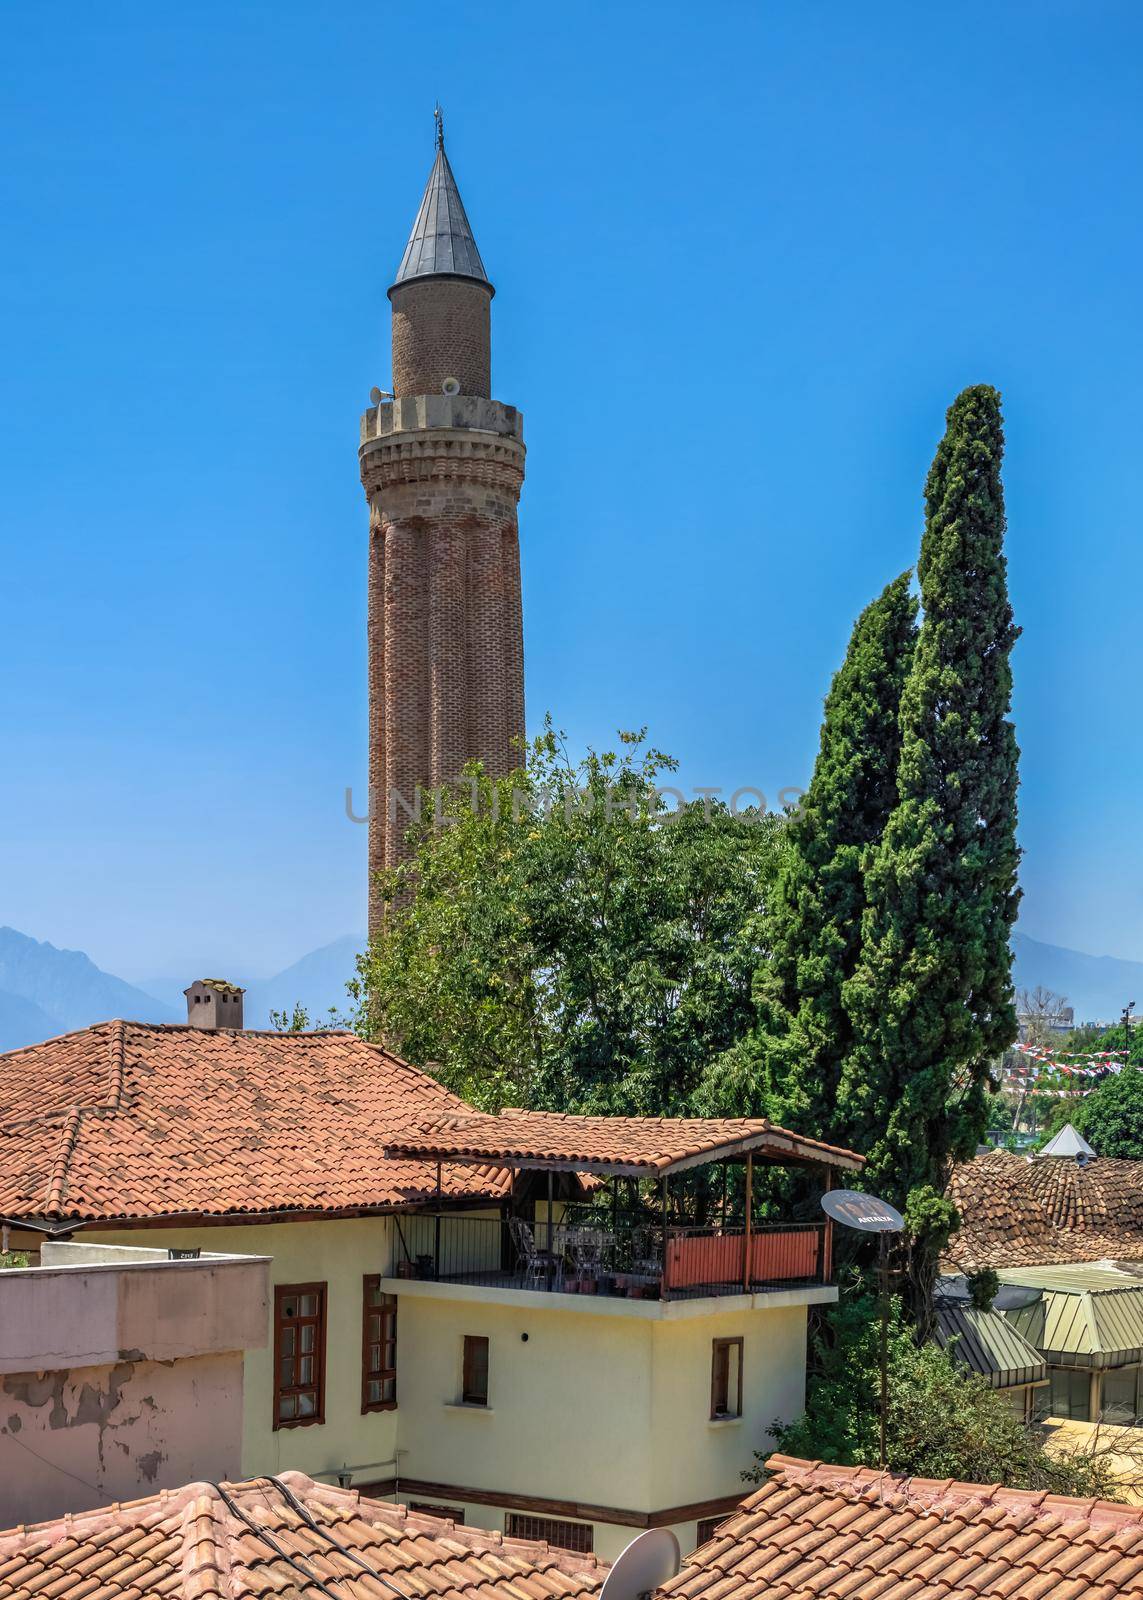 Antalya, Turkey 19.07.2021. Yivli Minare Mosque or Alaaddin Mosque in Antalya, Turkey, on a sunny summer day